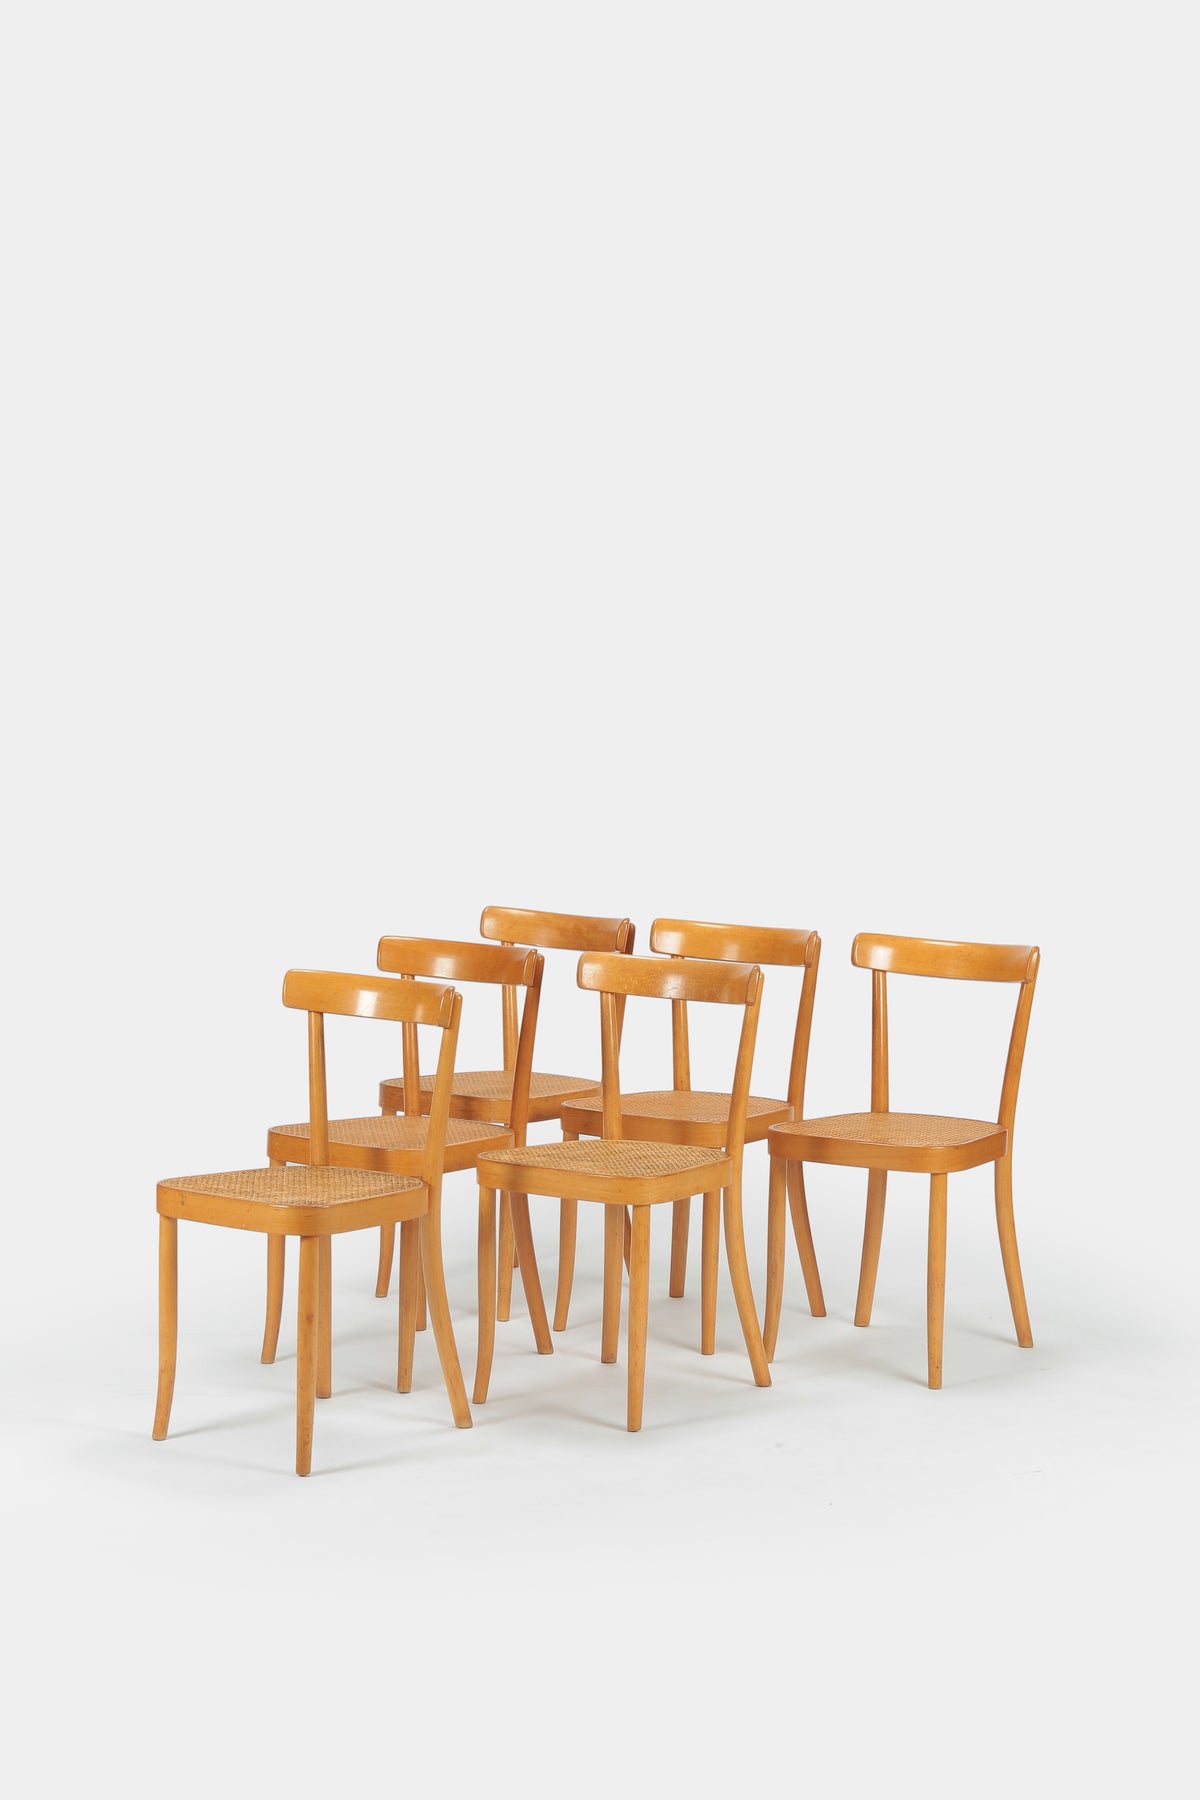 6 Wohnbedarf - model 3 Moser chairs Horgen Glarus 30s